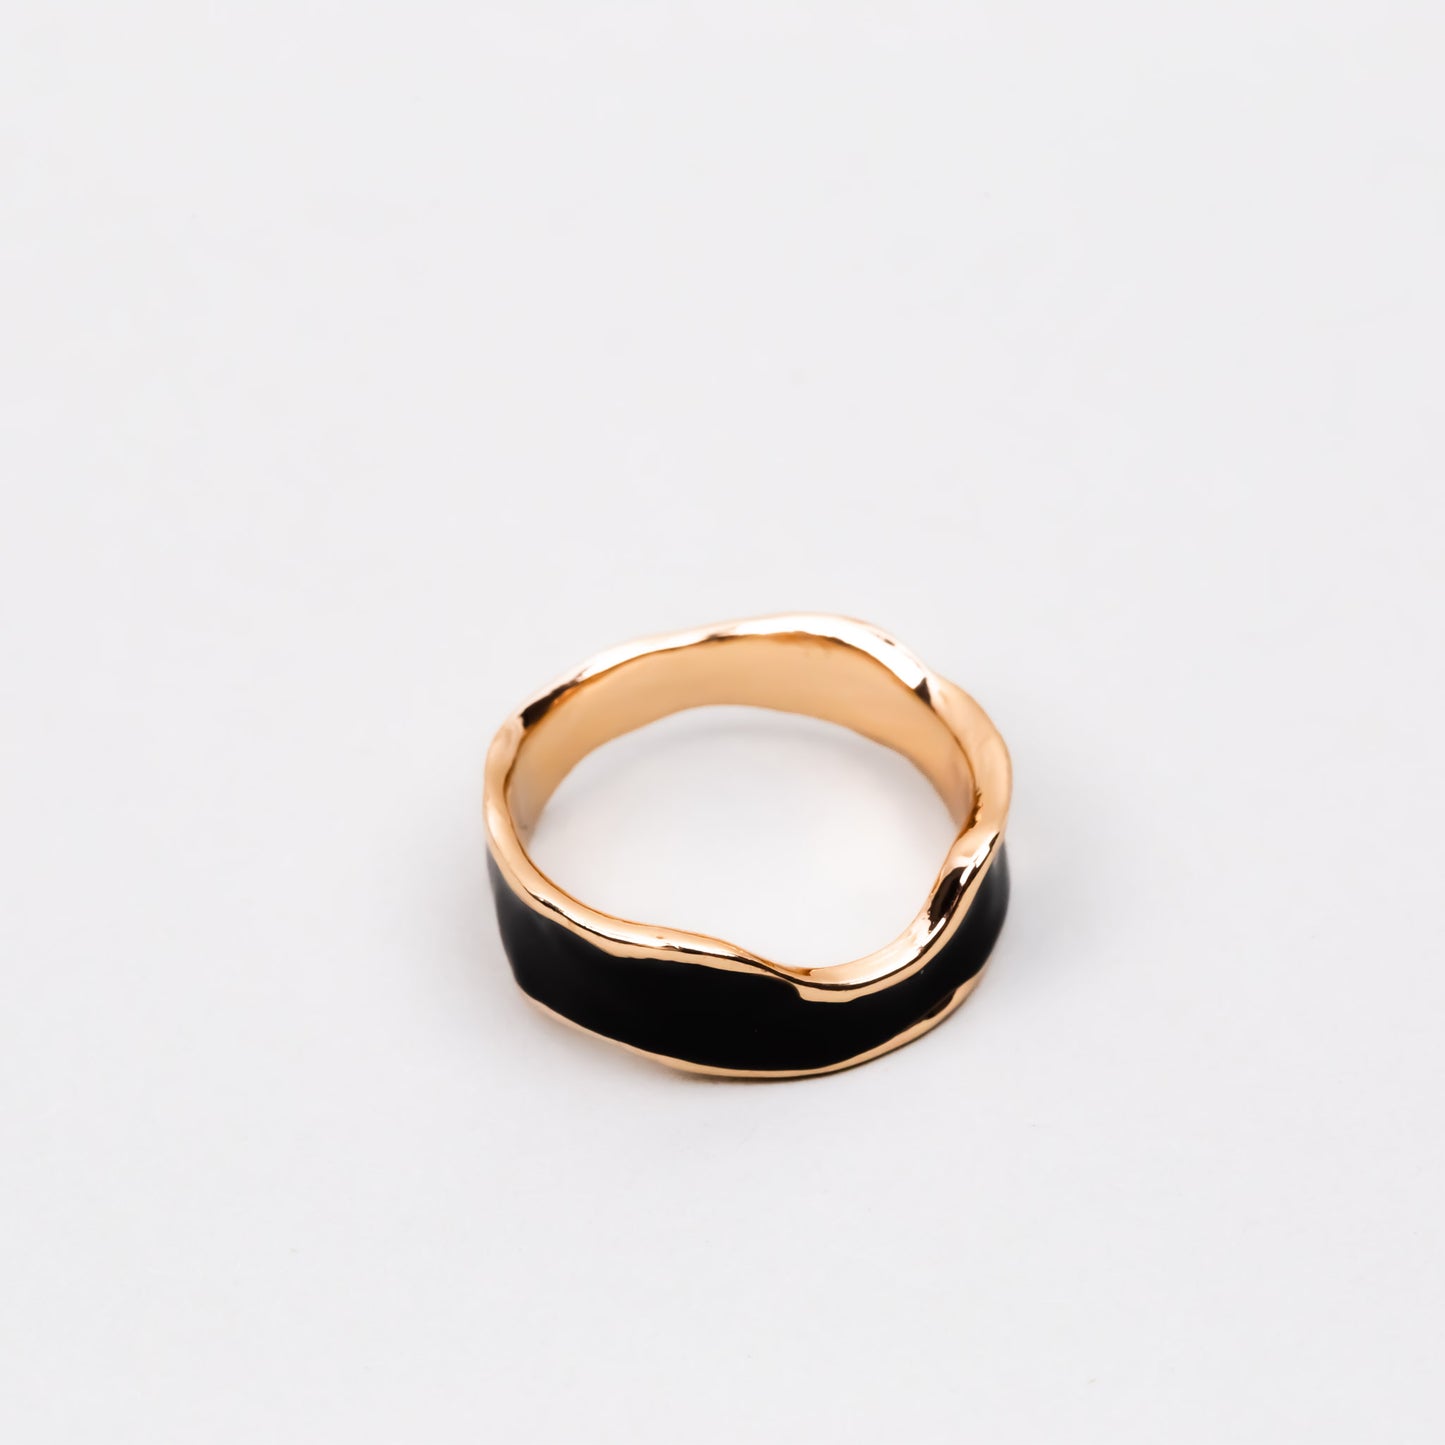 Inel auriu cu formă abstractă și accent color - Negru